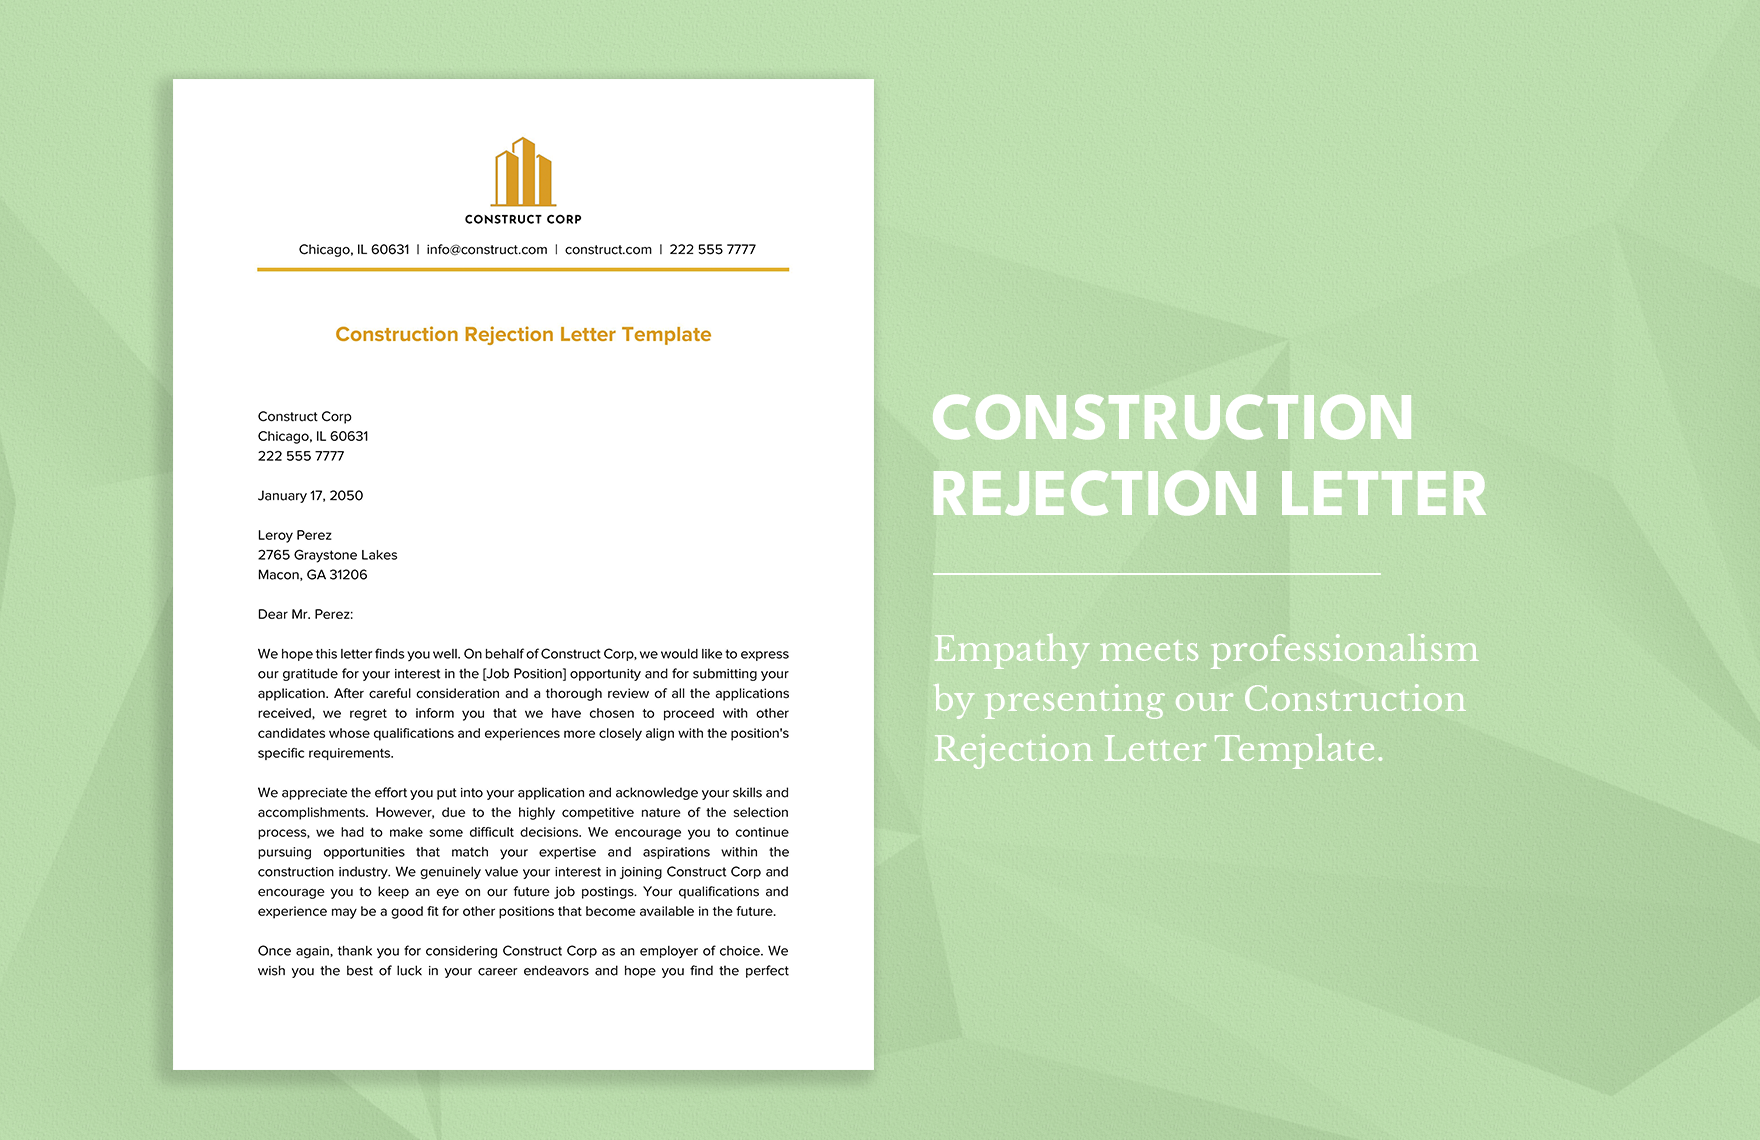 Construction Rejection Letter